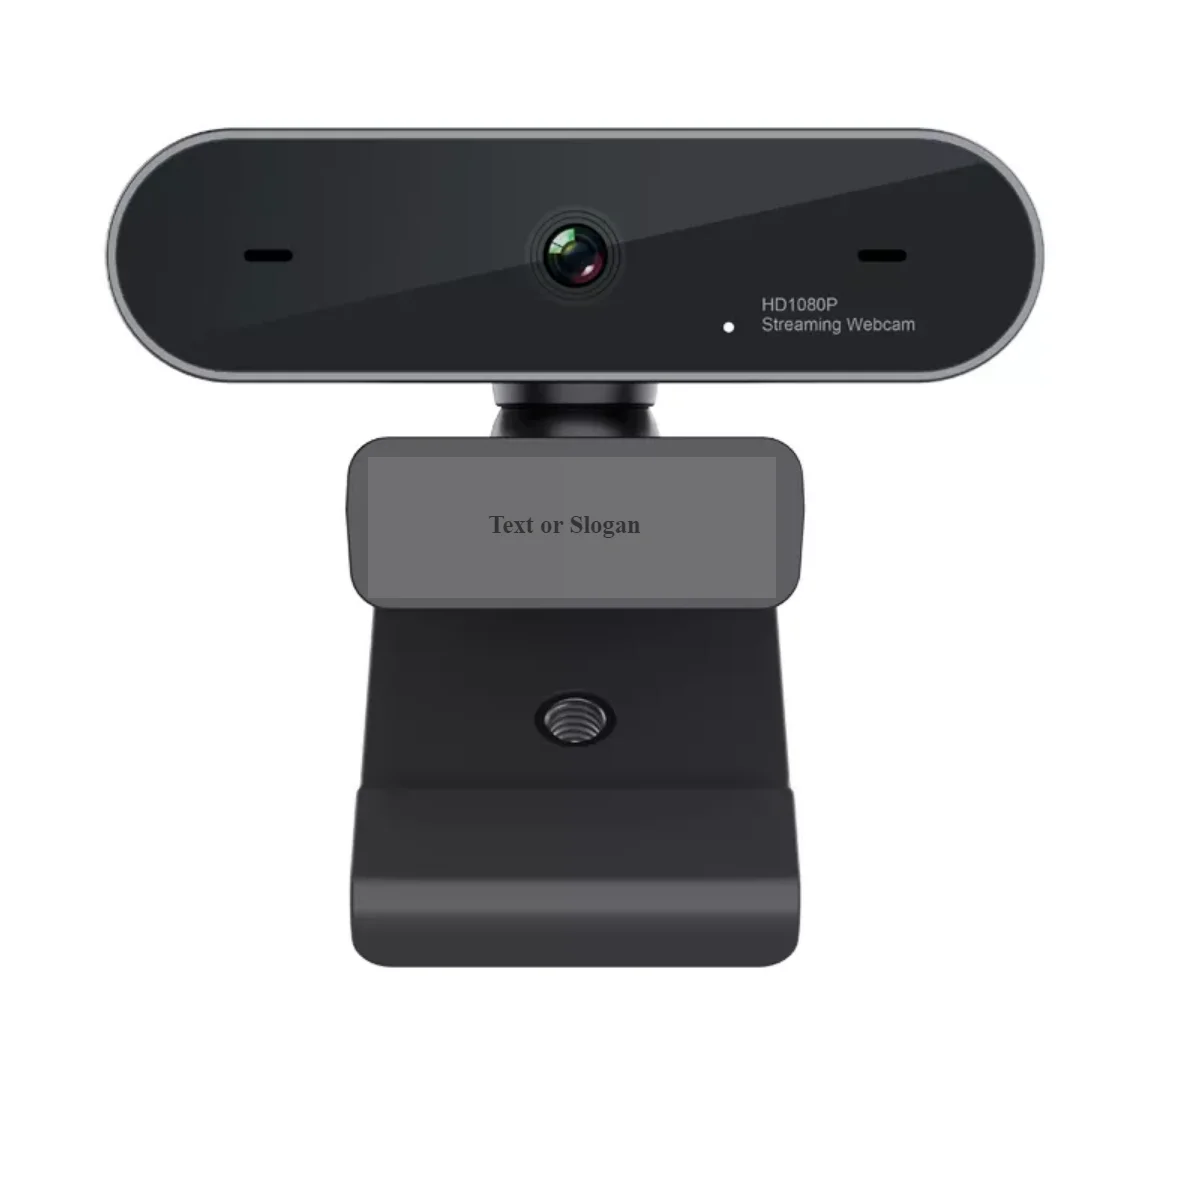 Usb Wired Webcam Playstation Camera For Streaming Buy Webcam 1440p,Comference Kamera With 90 Degress,Camara De La Oficina De Conferencias Product on Alibaba.com